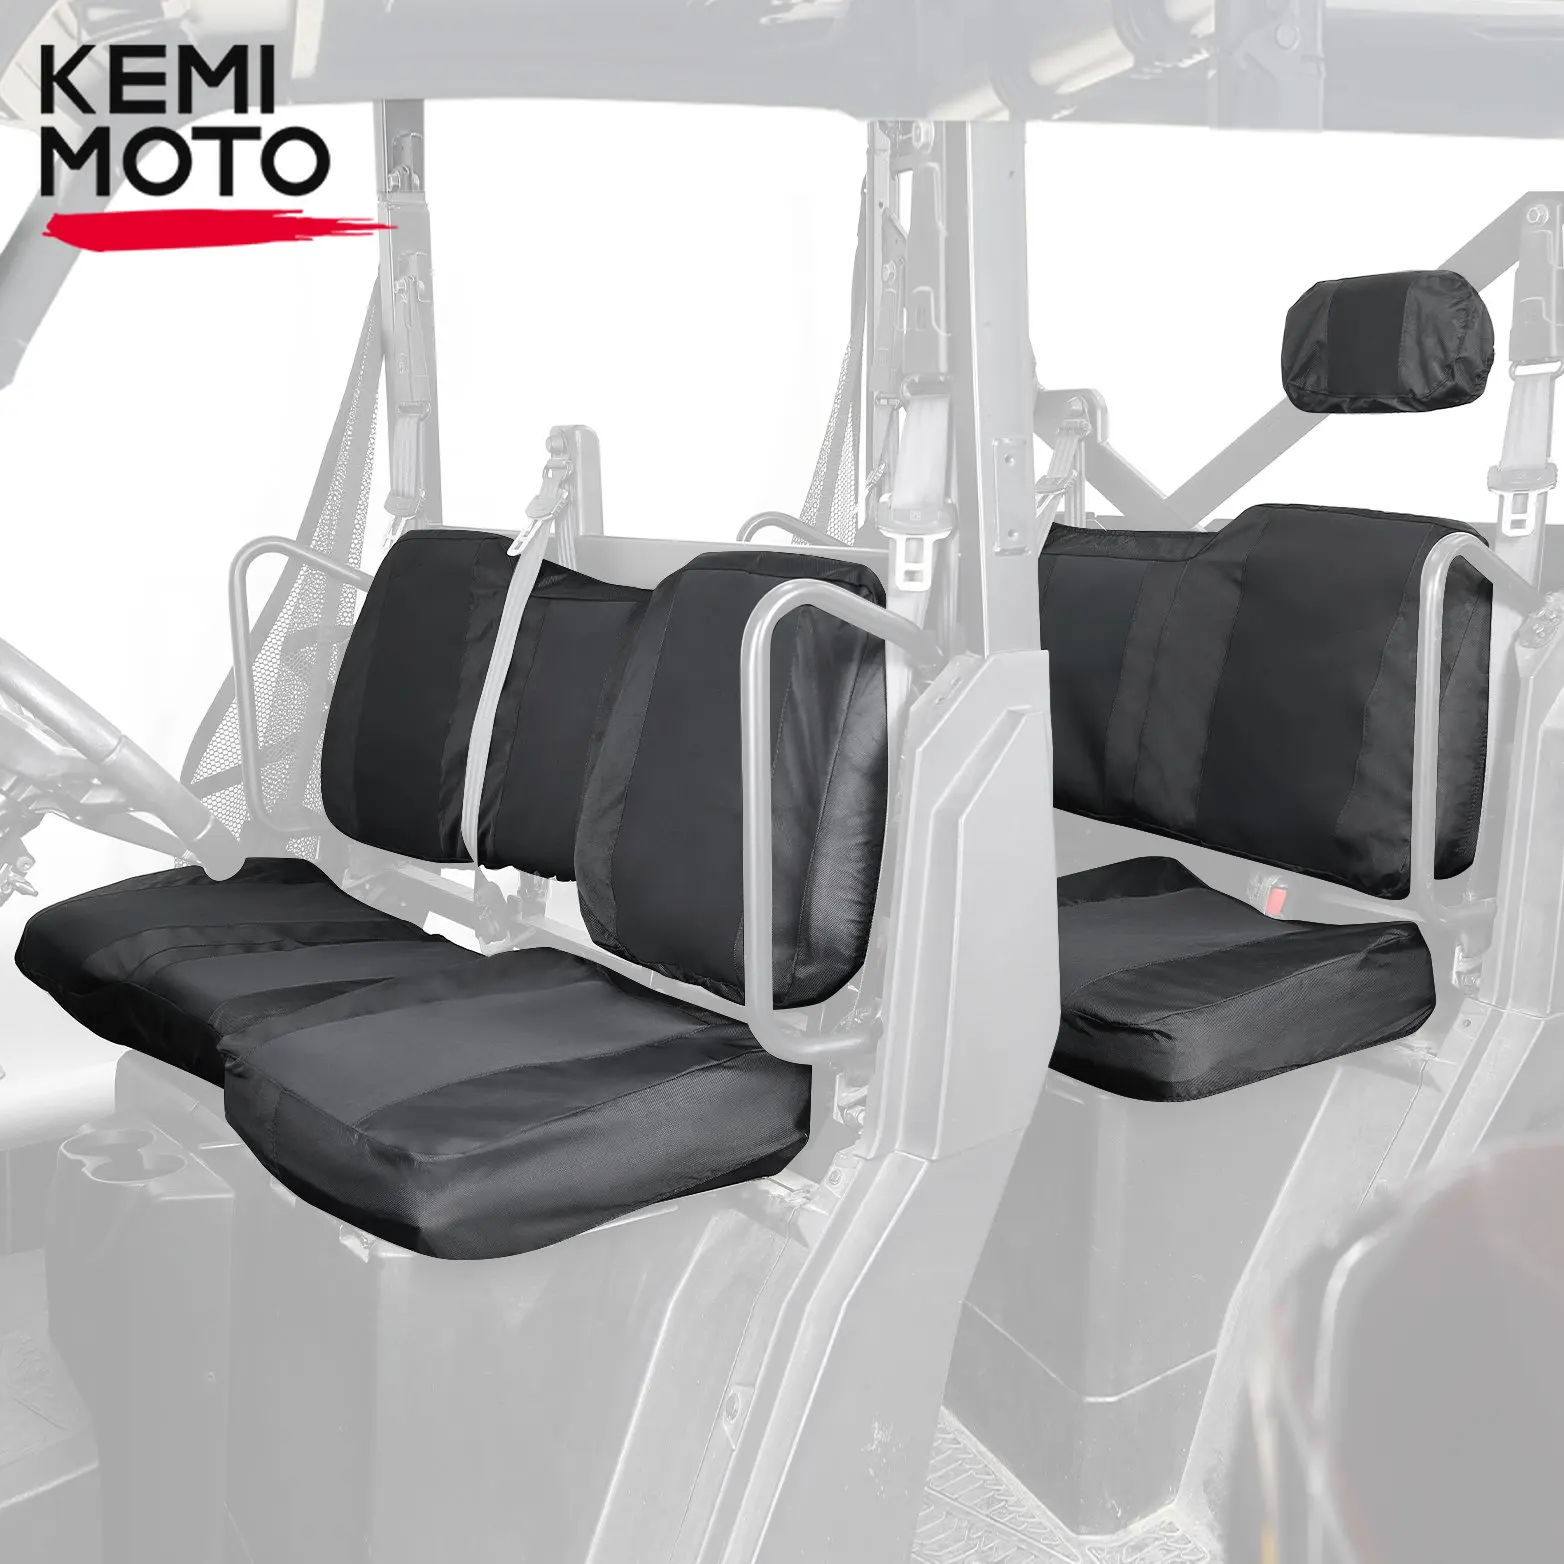 KEMIMOTO Crew Seat Set Covers with Headrest Compatible with Ranger Crew XP 1000 / Crew 1000 Premium / Crew XP 1000 2017-2023